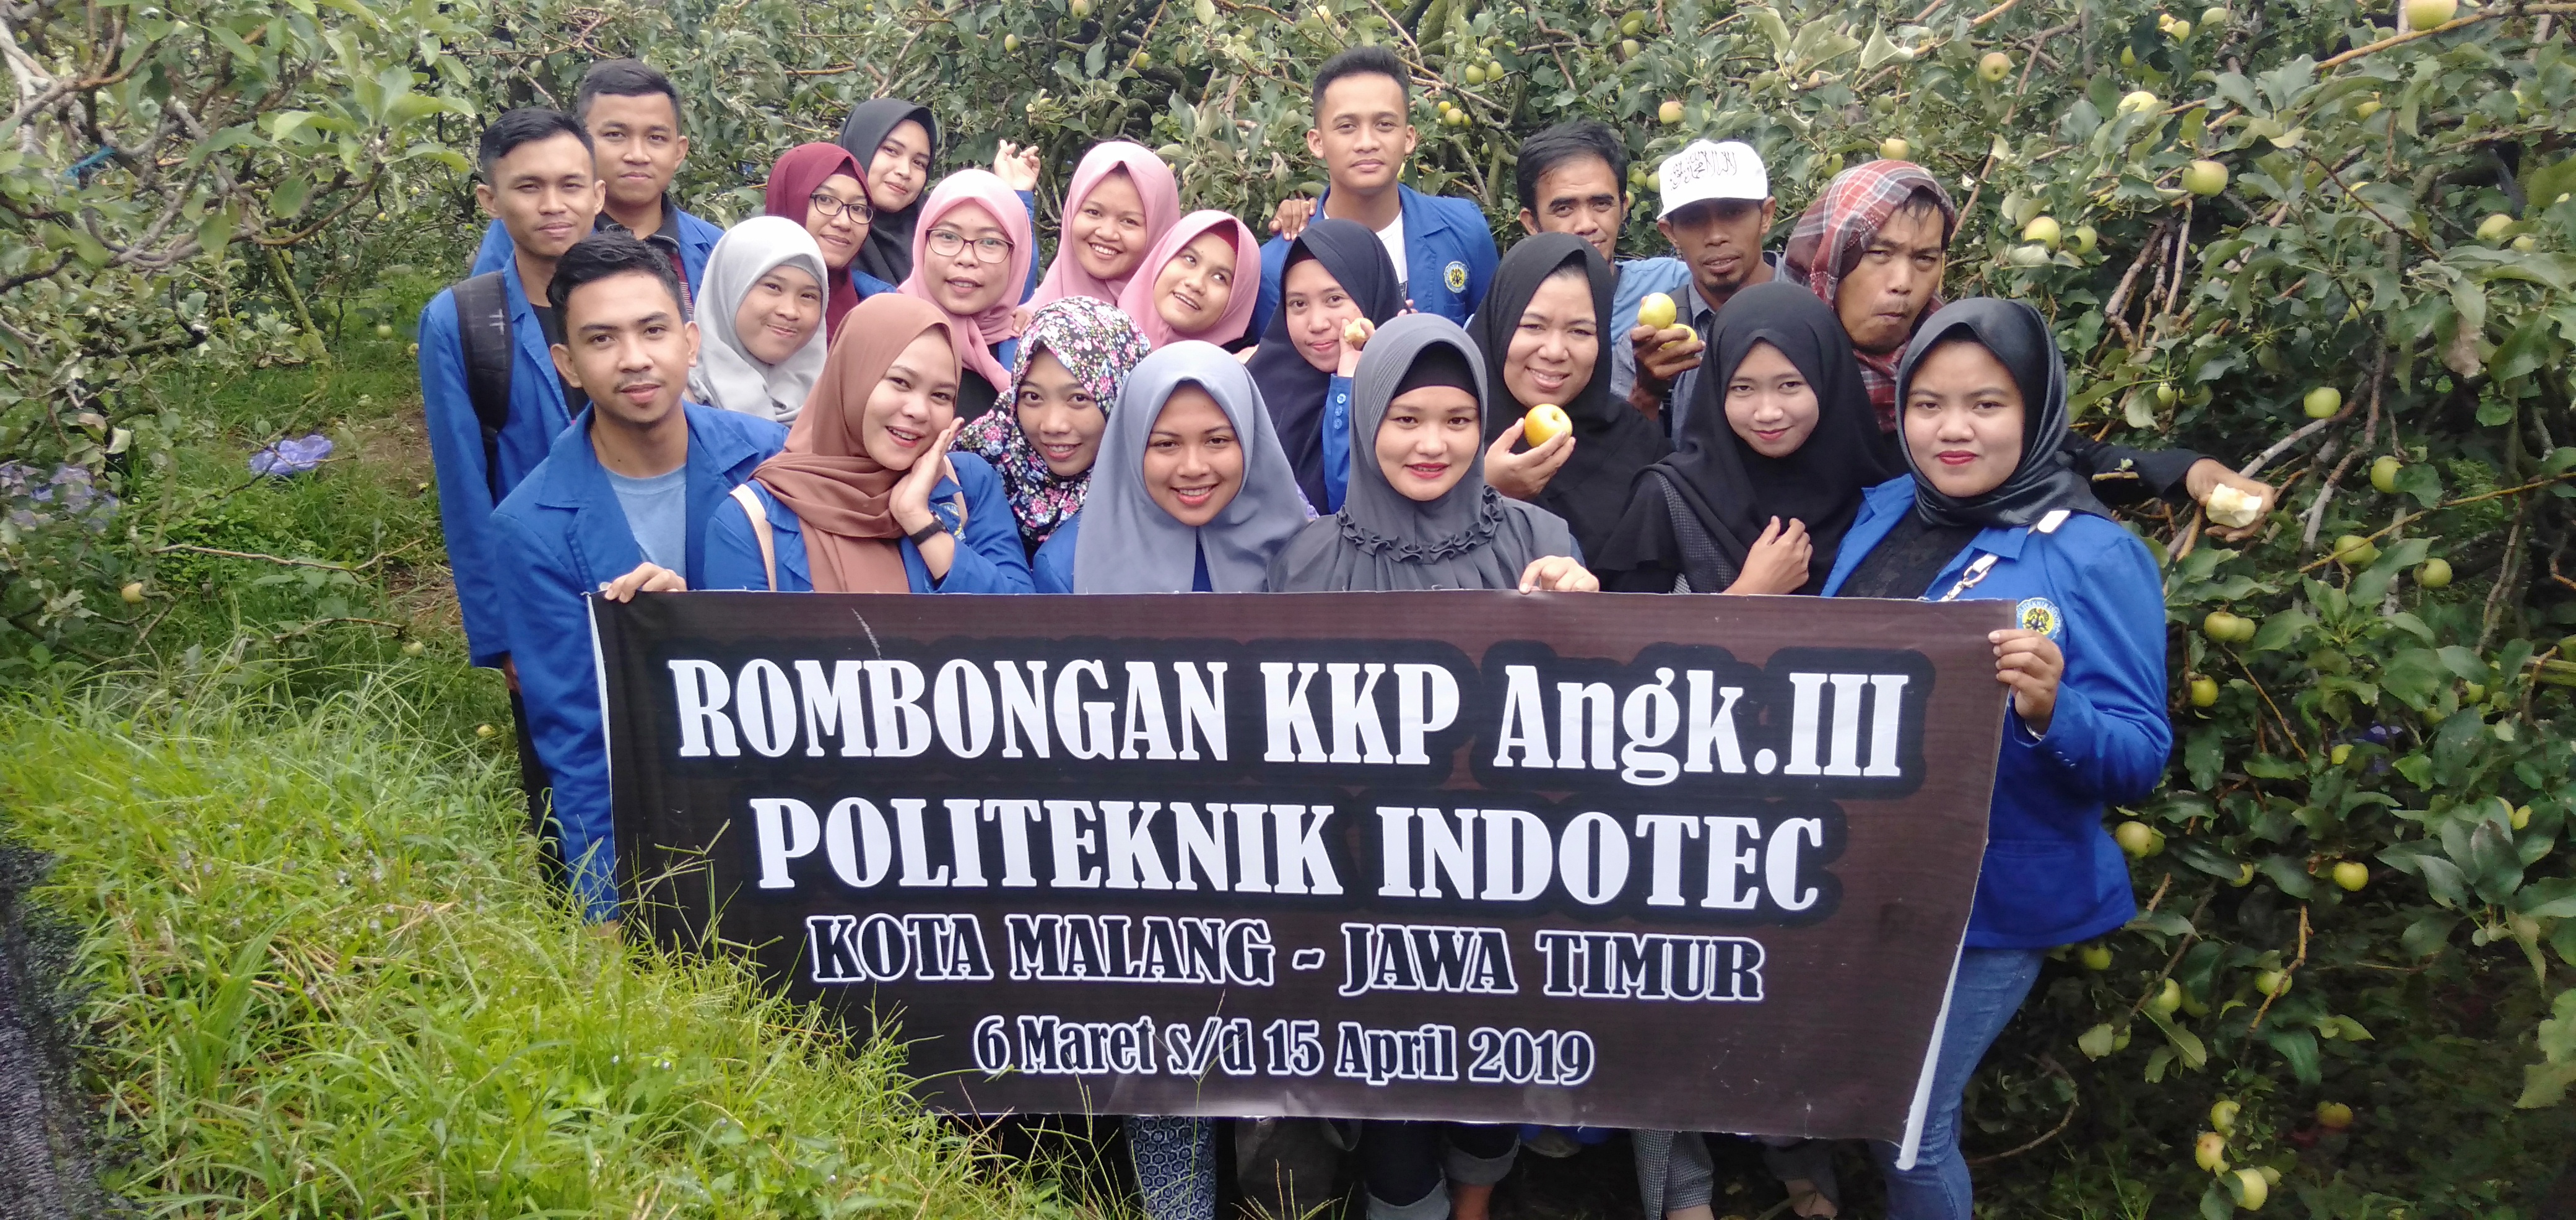 Mahasiswa Politeknik Indotec, KKP di Malang Jawa Timur